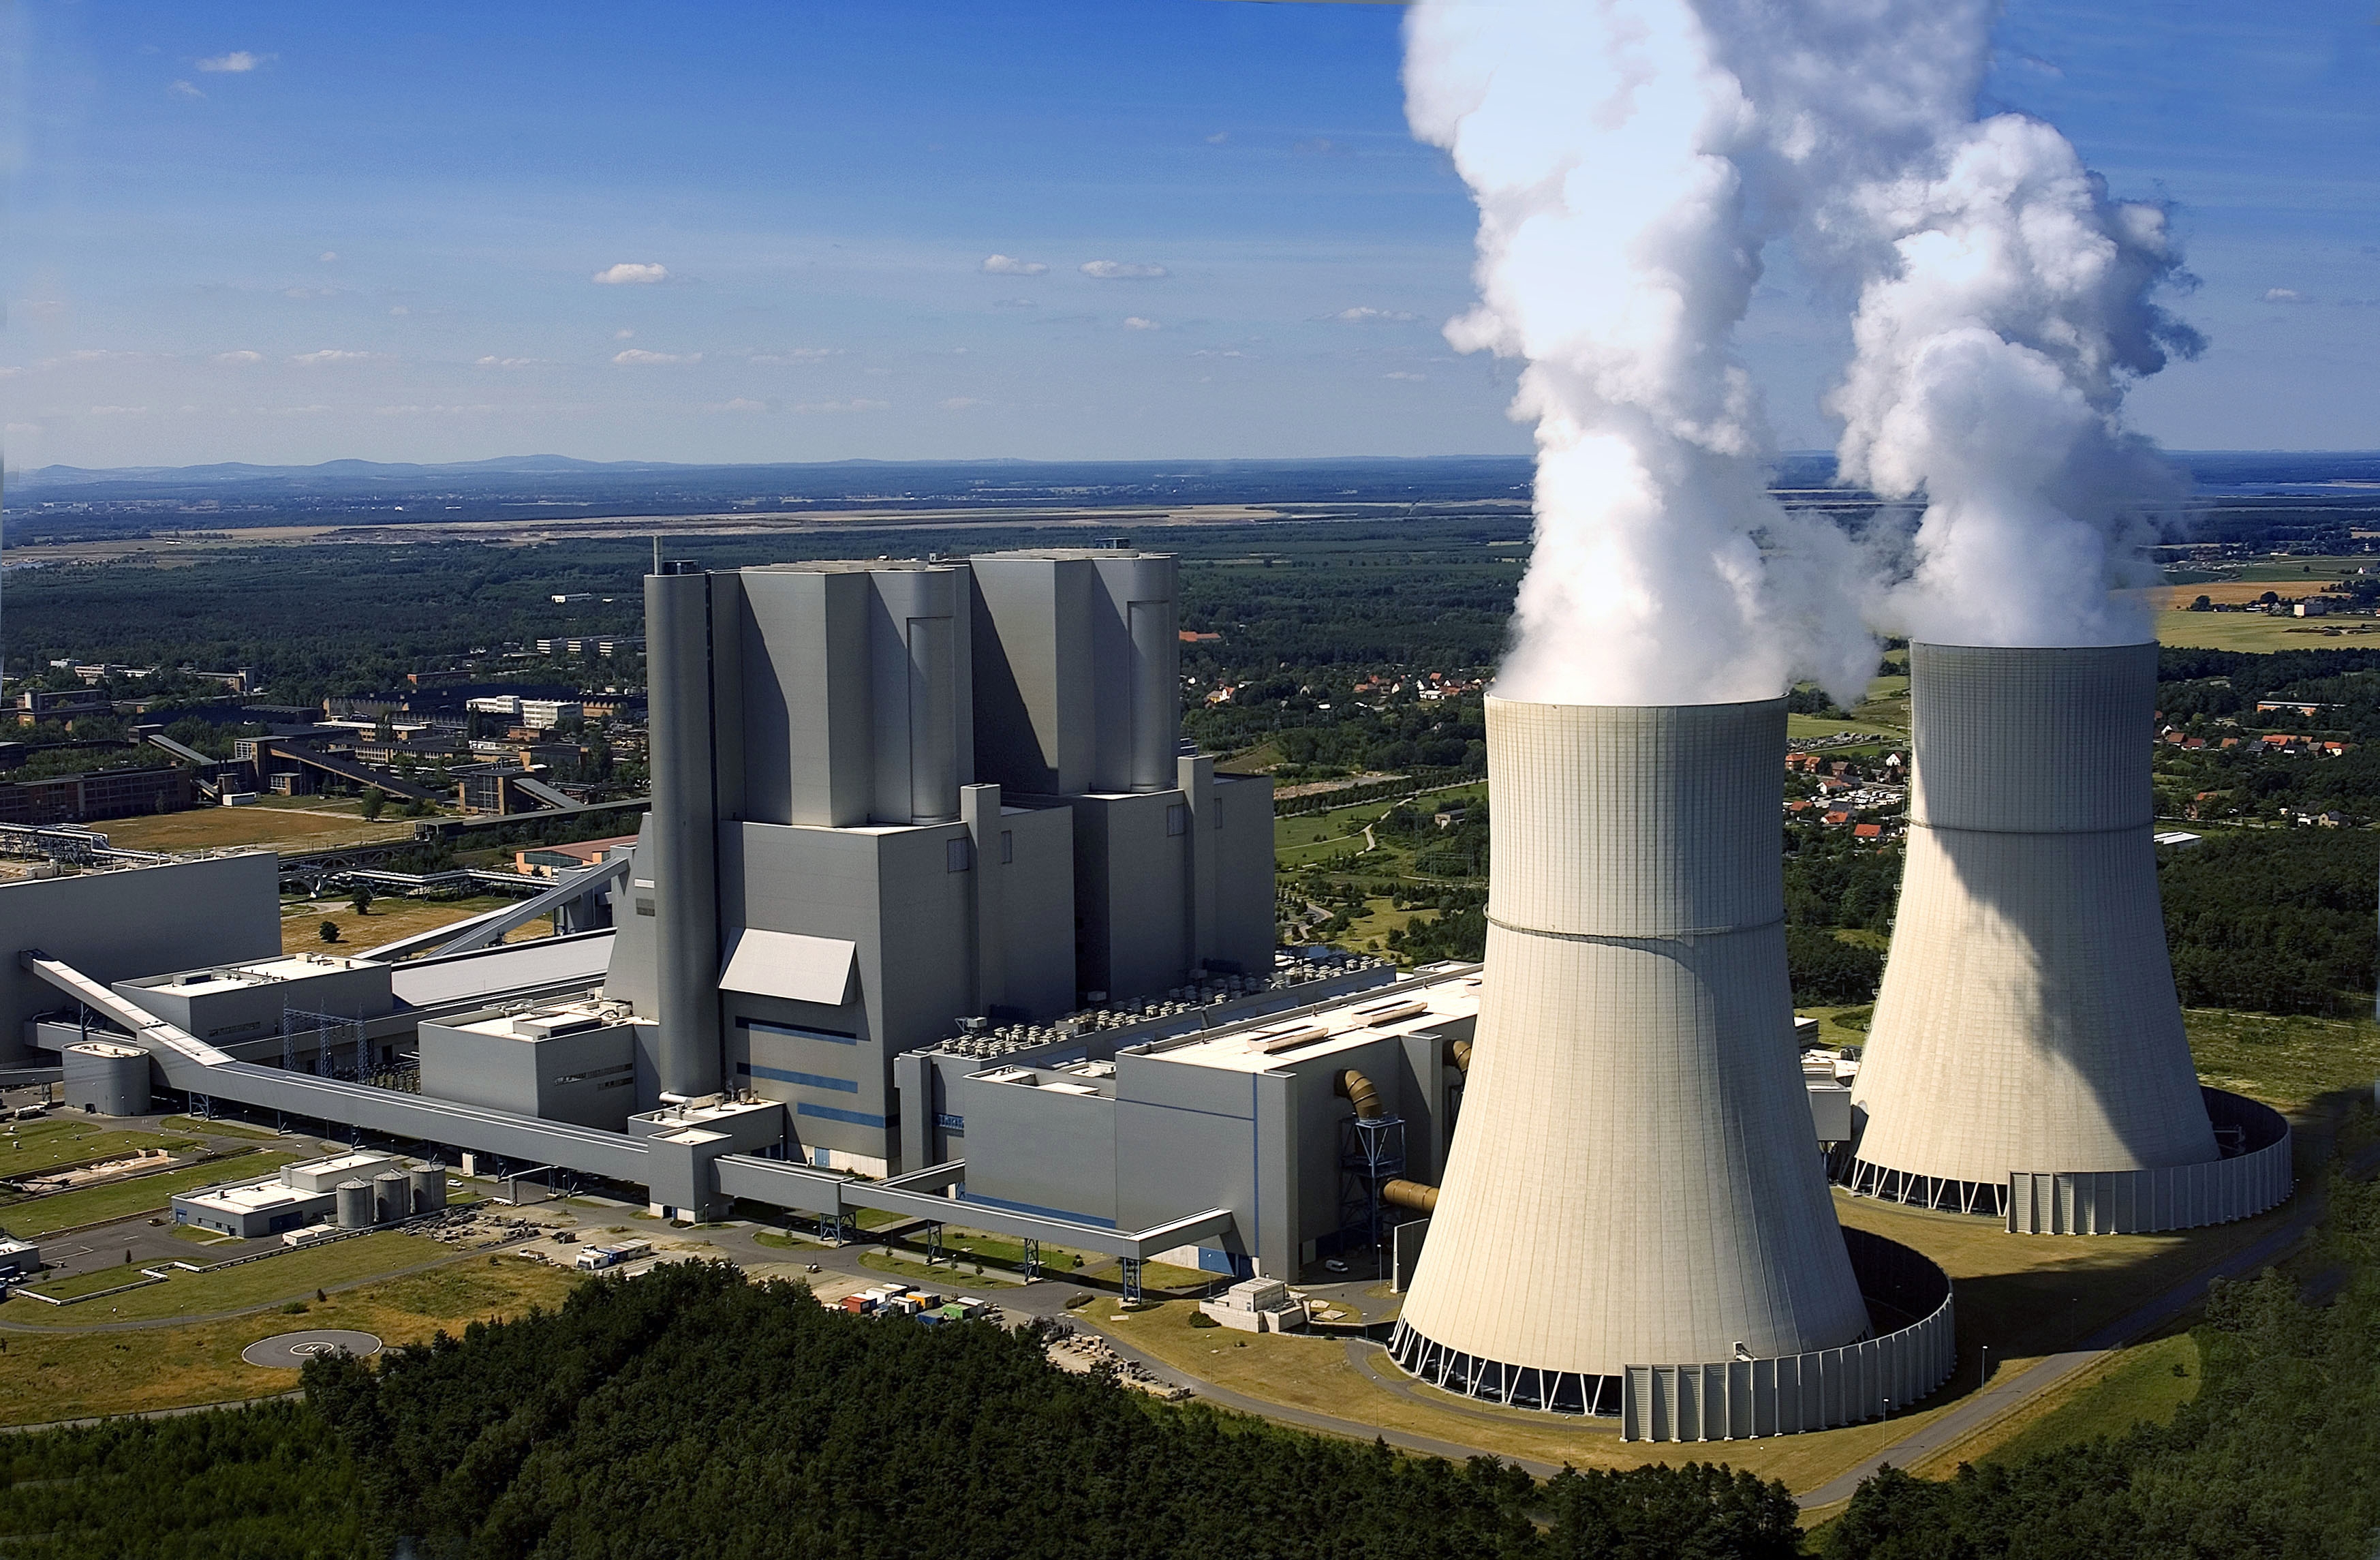 Schwarze_Pumpe_power_plant